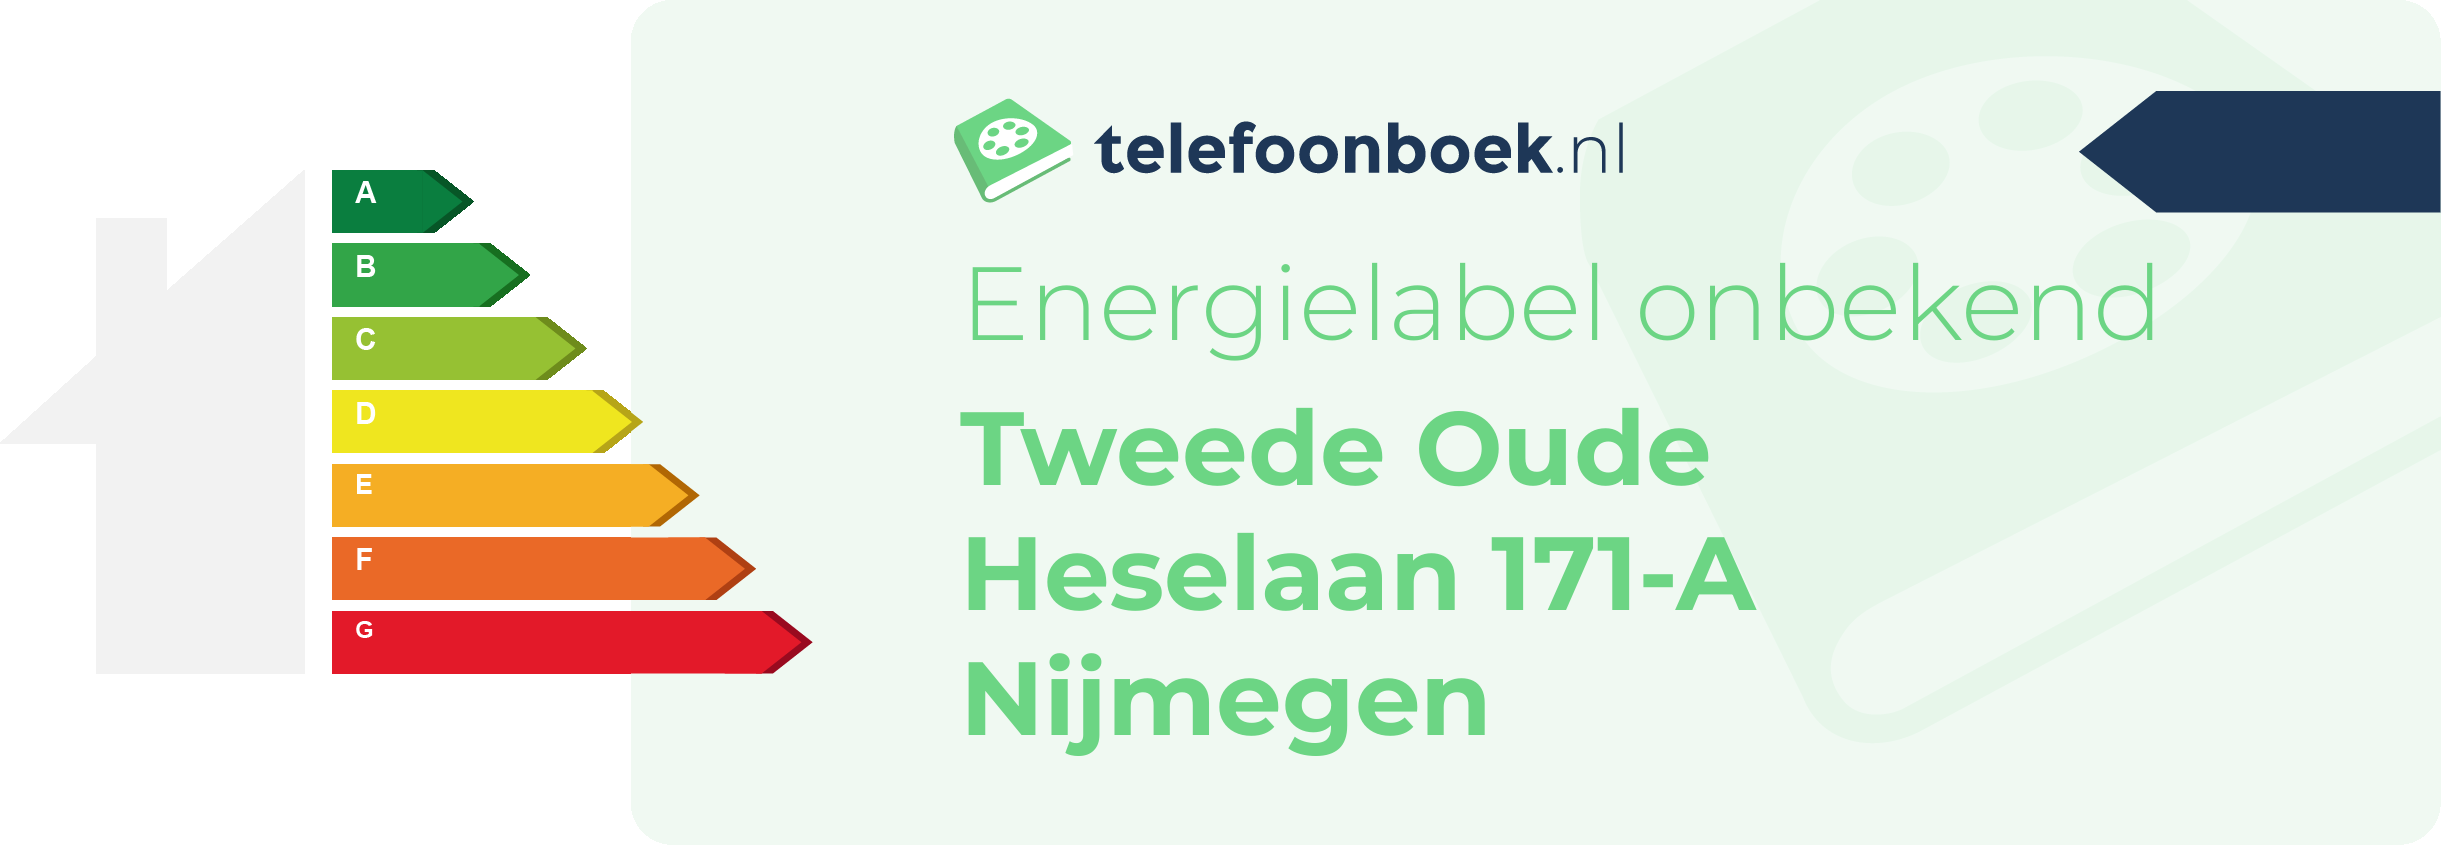 Energielabel Tweede Oude Heselaan 171-A Nijmegen